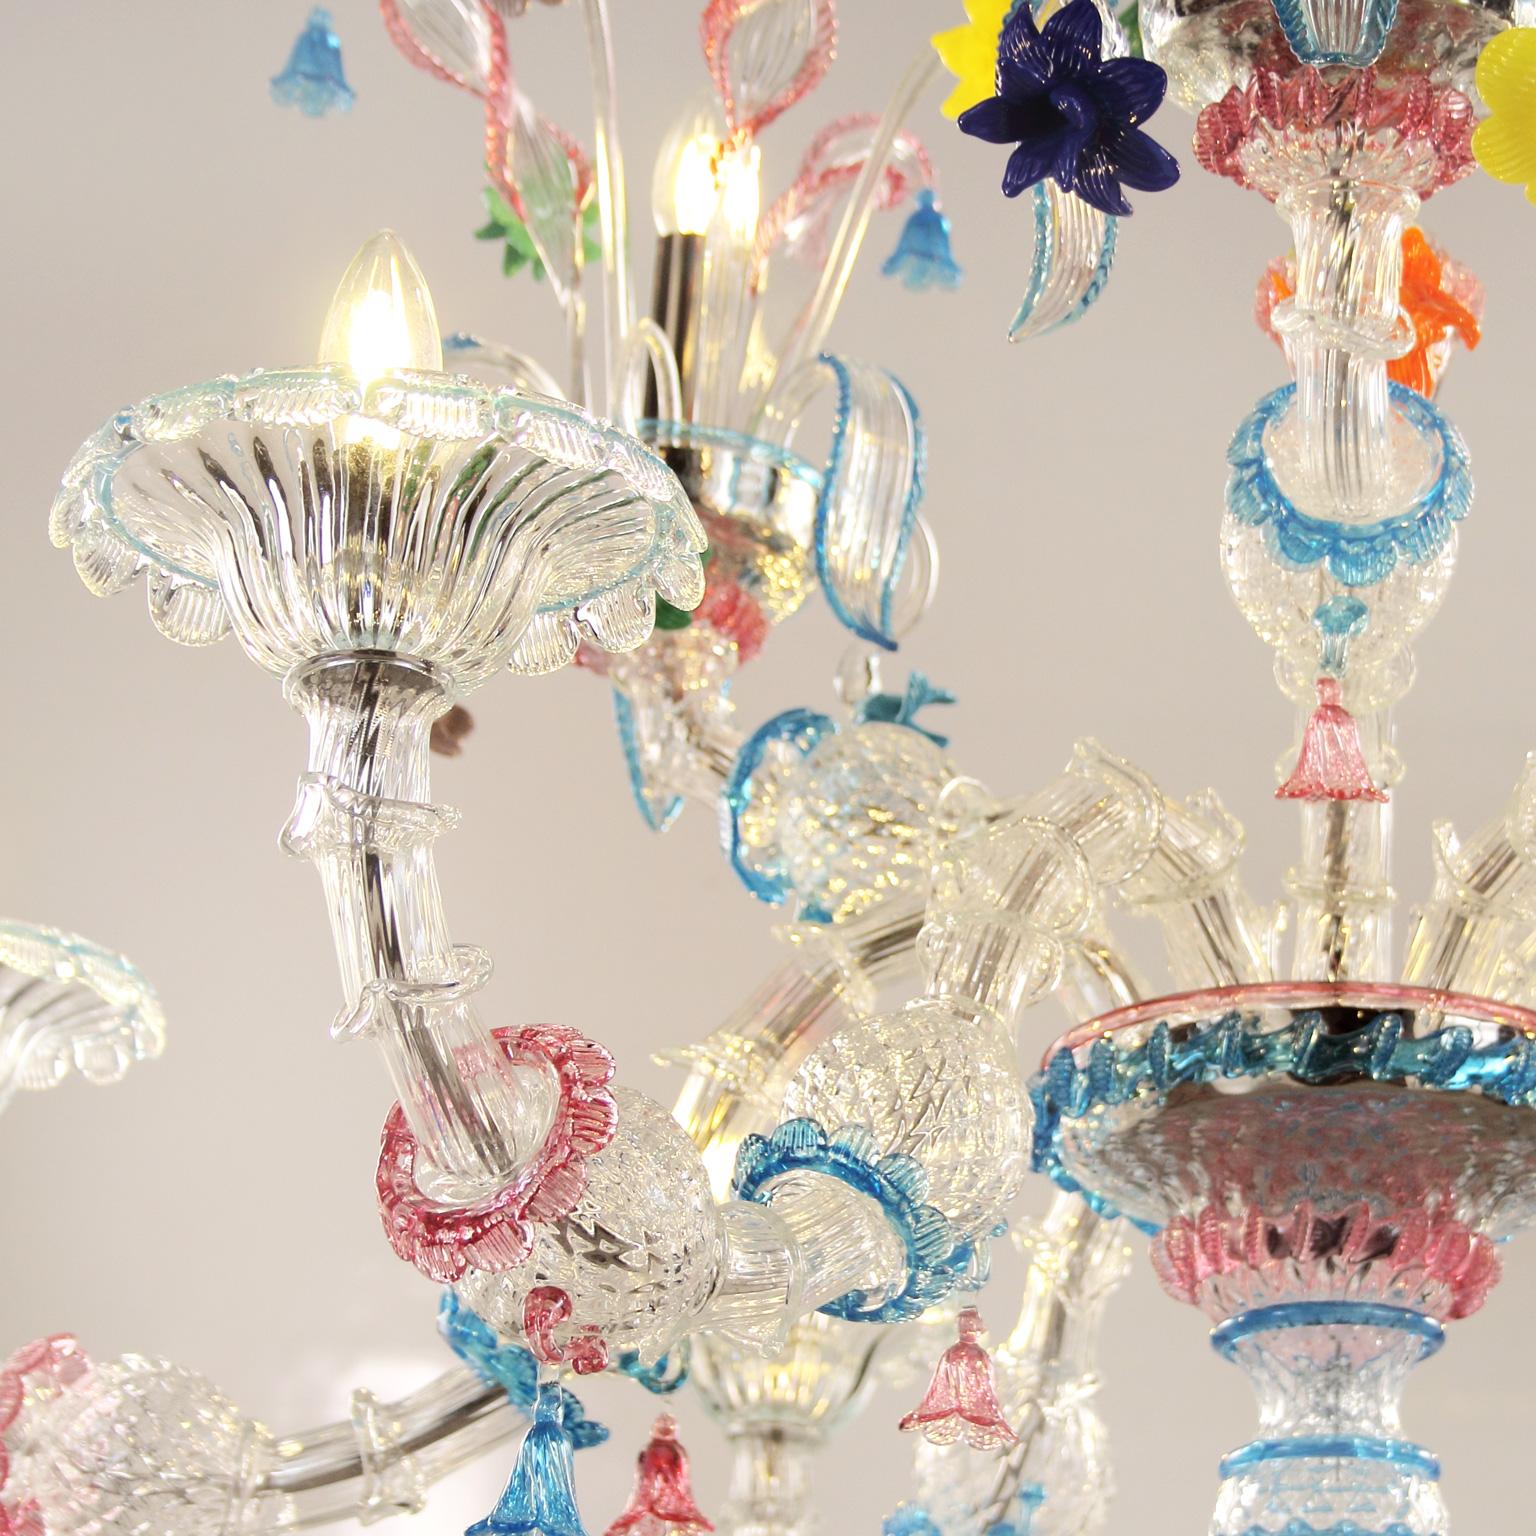 Kia Ora est la combinaison de la structure traditionnelle vénitienne avec des couleurs criardes. Les lustres en verre Kia Ora sont des œuvres d'éclairage particulières, vivantes et exubérantes : avec Kia Ora, nous avons réinterprété la tradition,